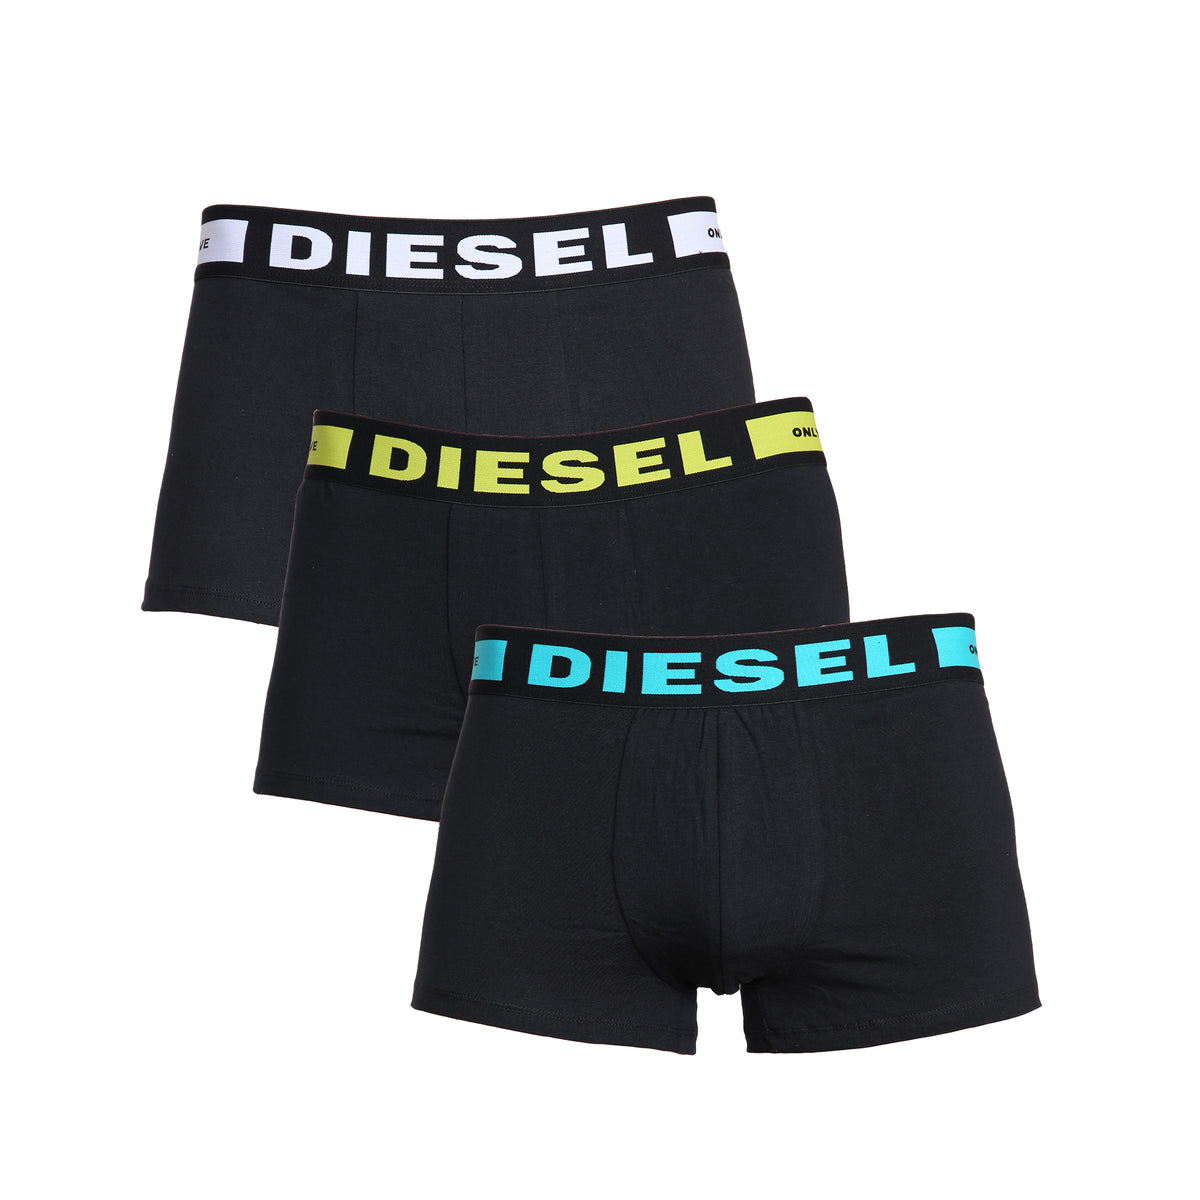 DIESEL_BXRS ALL-3PK Diesel | Mens Black Boxers (3 Pack) DIESEL RAWDENIM